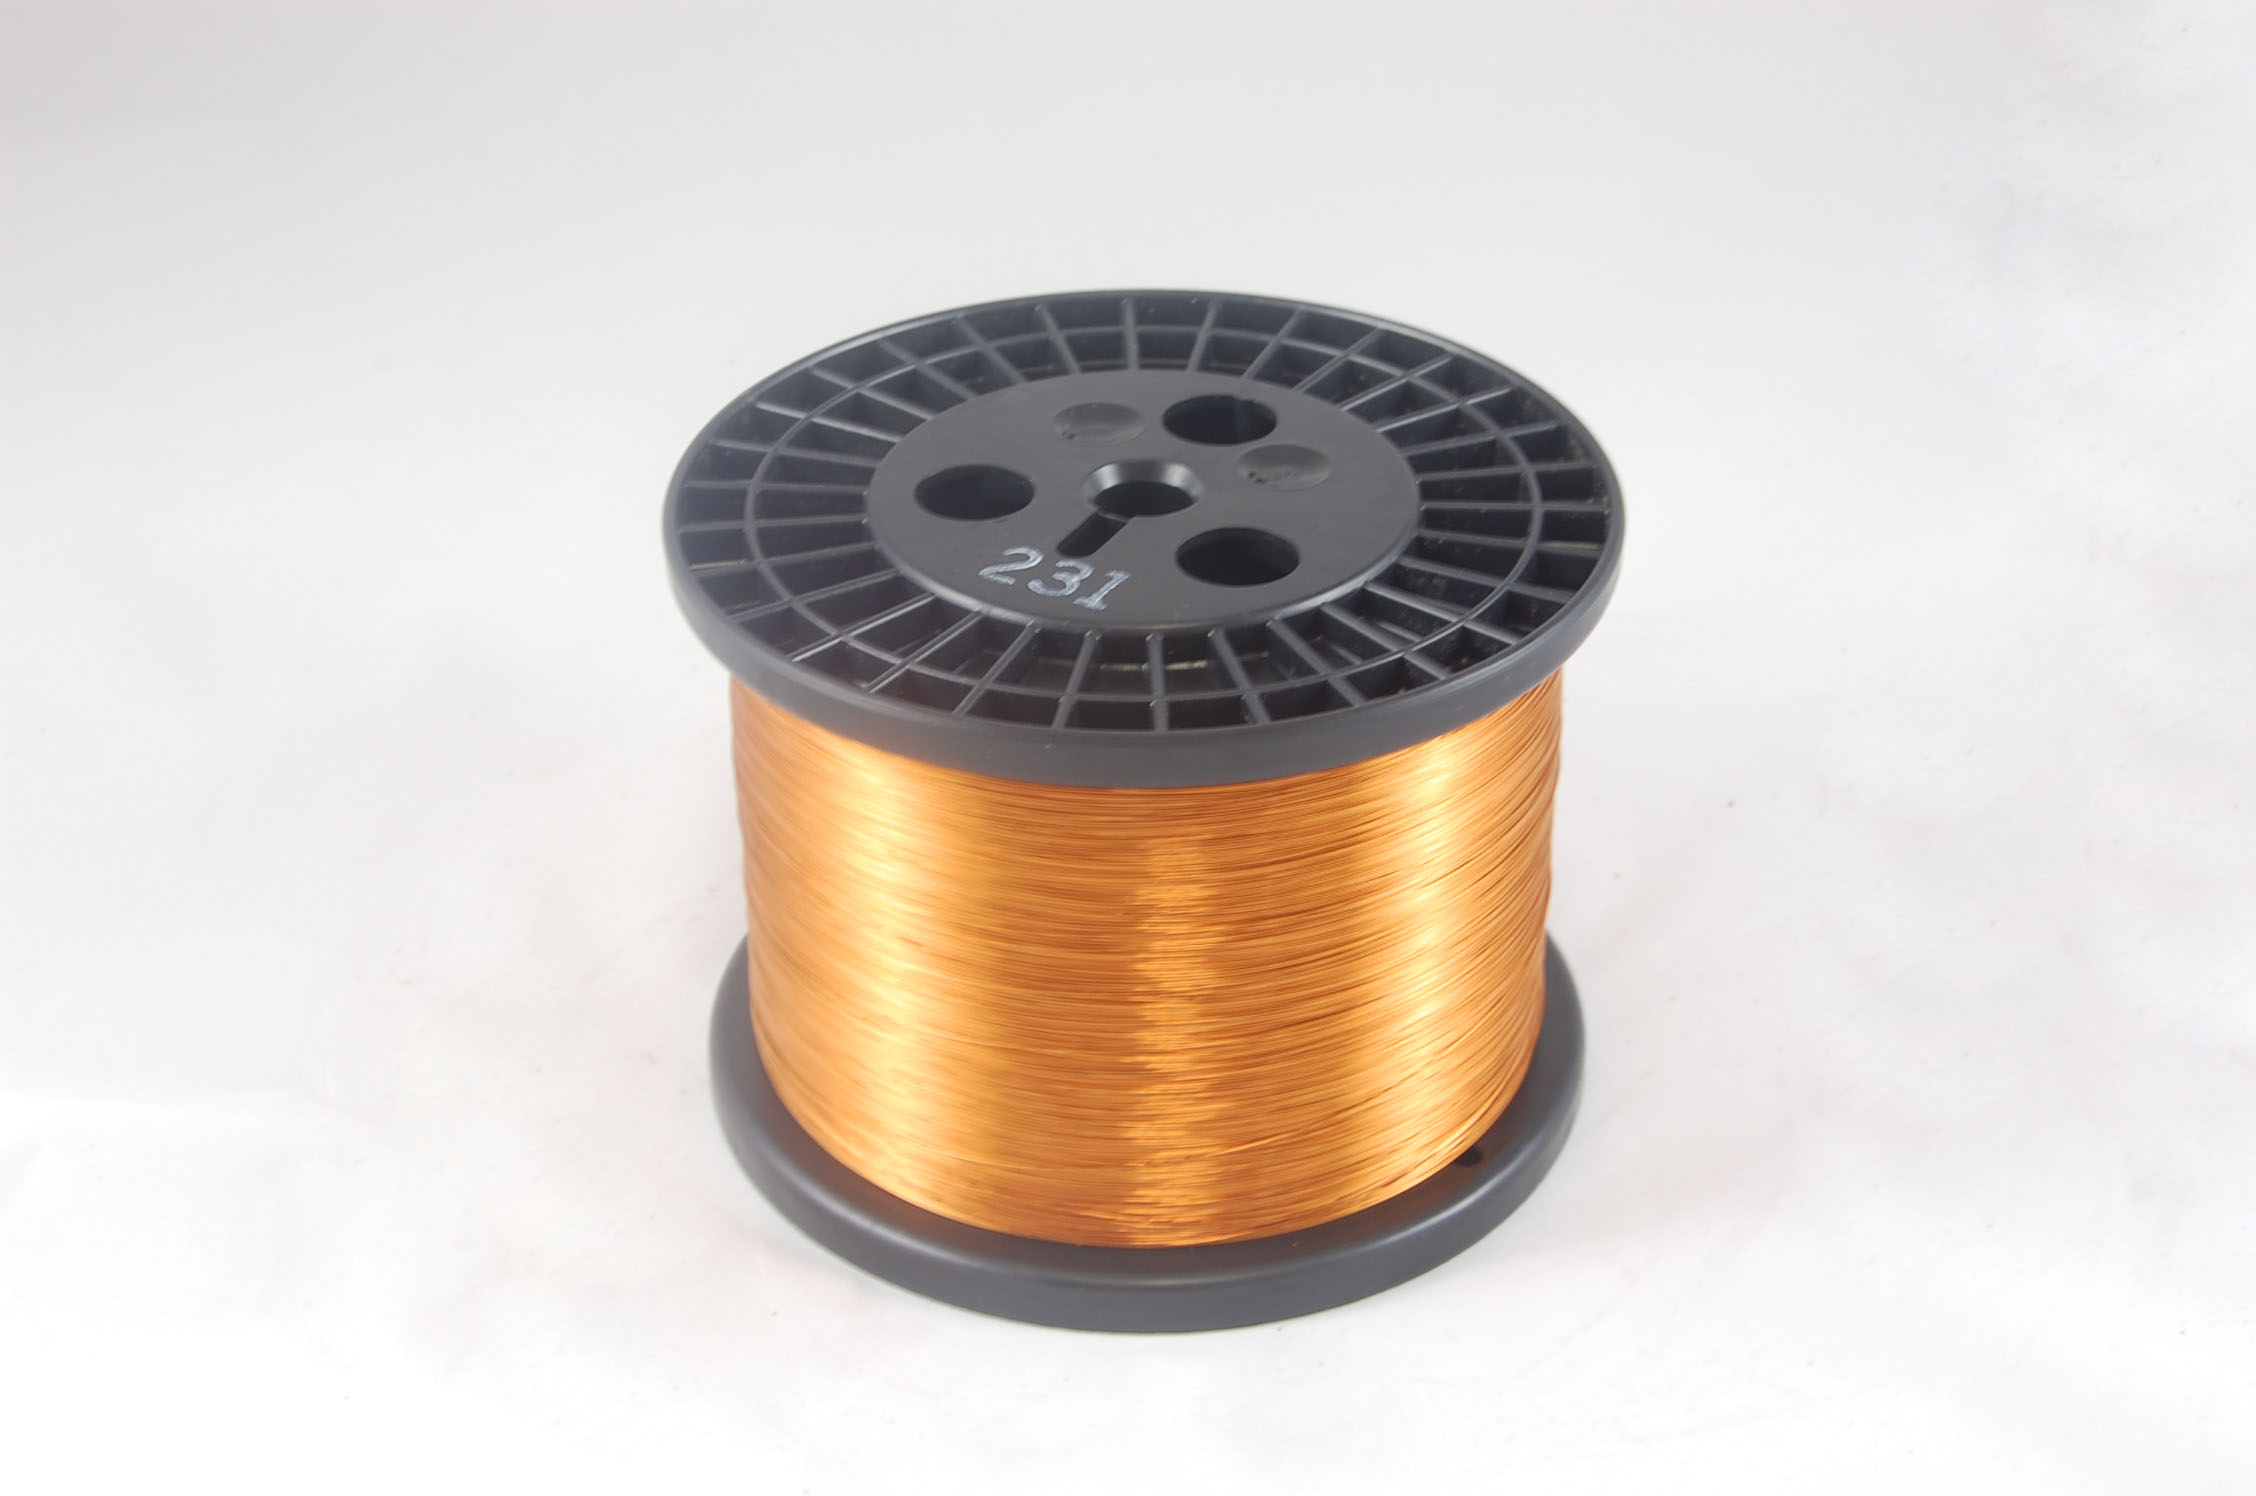 #15 Heavy GP/MR-200 Round MW 35 Copper Magnet Wire 200°C, copper, 10 LB 6" spool (average wght.)